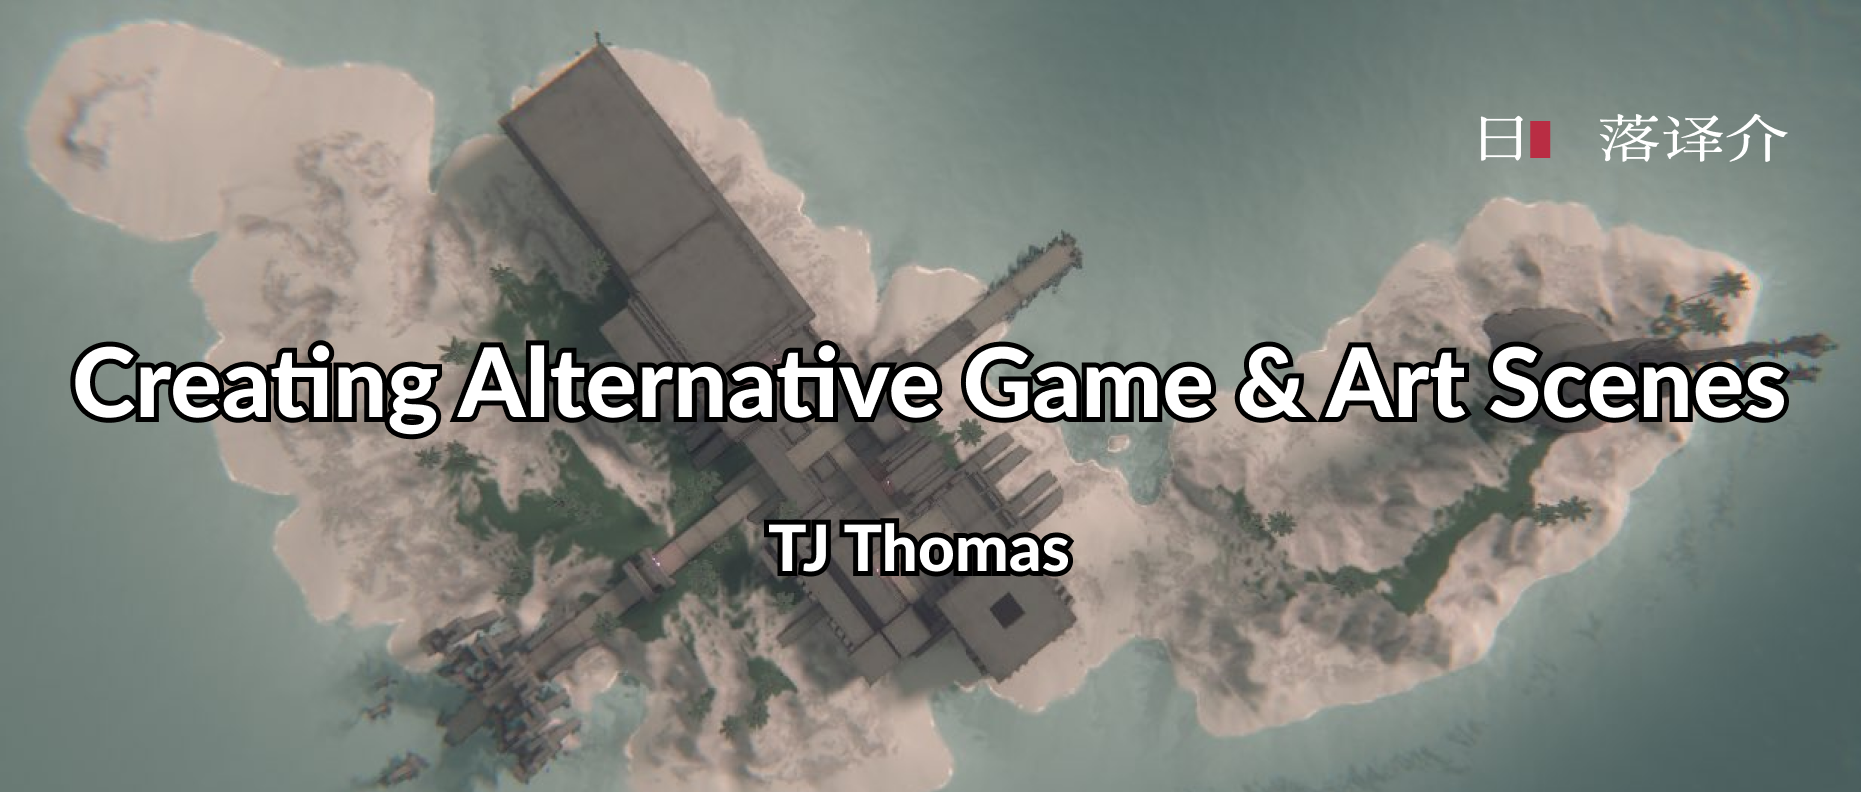 译介丨TJ Thomas：创造另类游戏与艺术场景(2015)